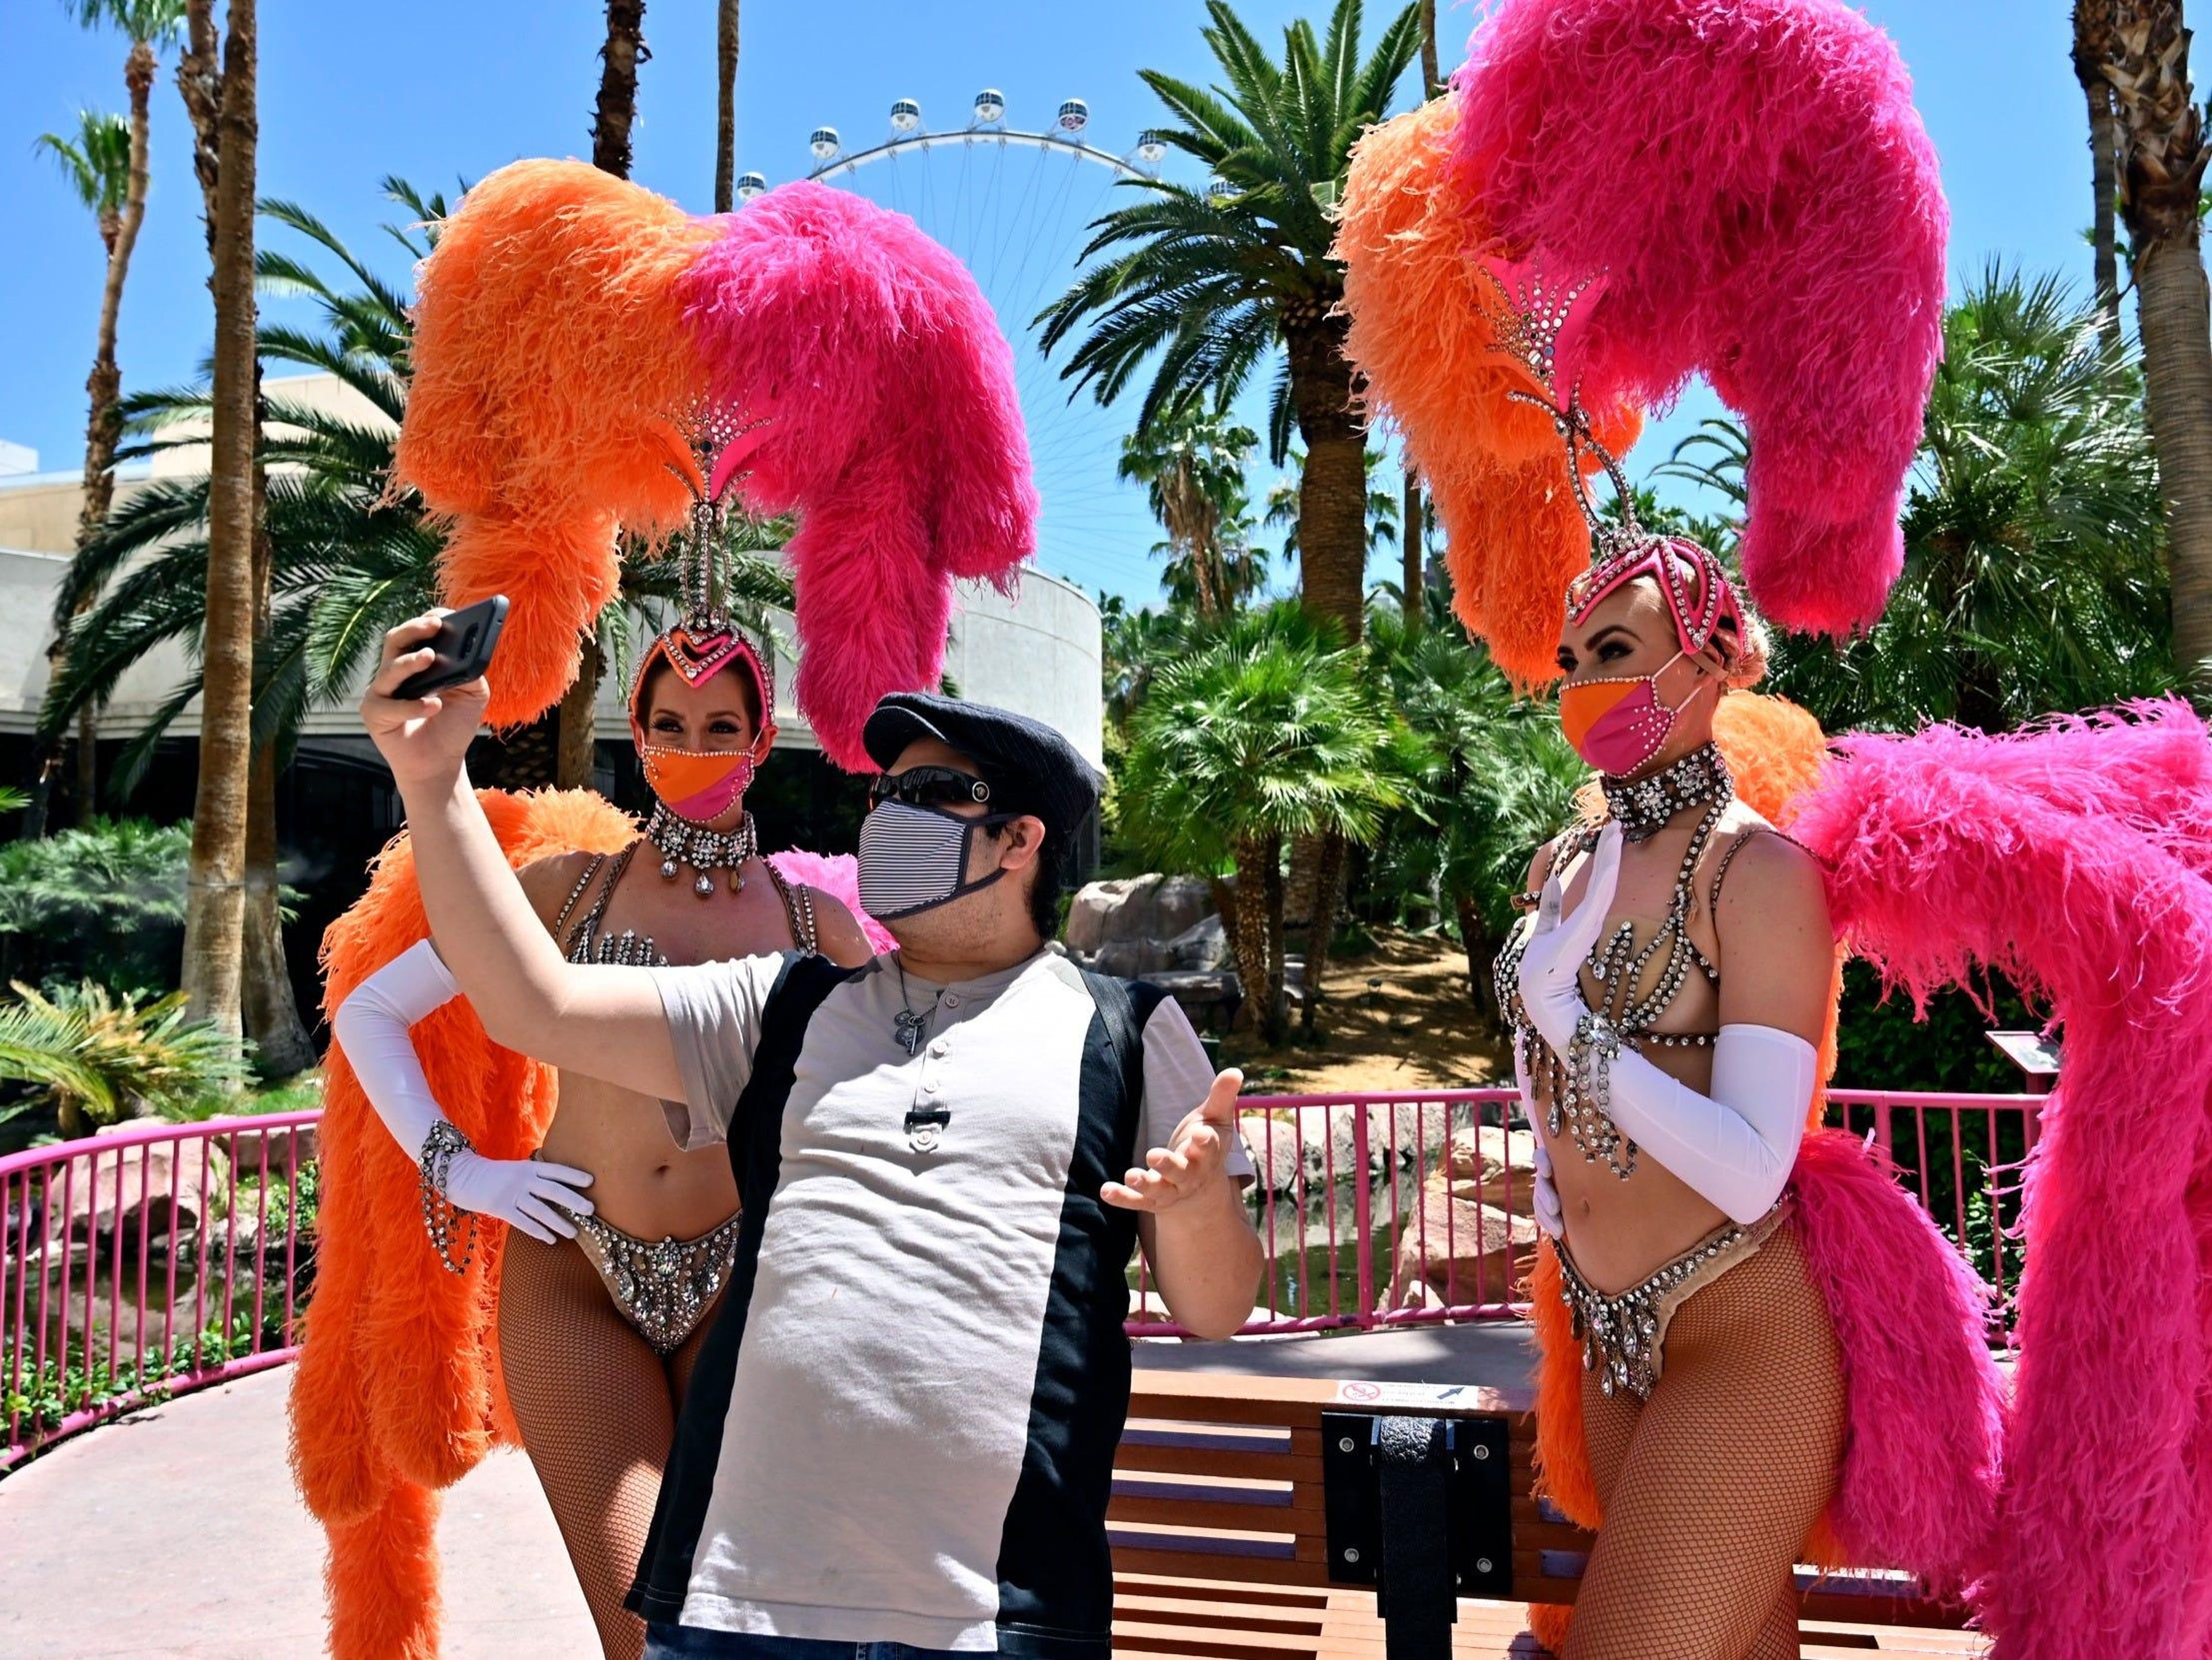 El influencer Chris Avila graba un vídeo con dos bailarinas ataviadas con mascarillas faciales en el Hotel Flamingo de Las Vegas.